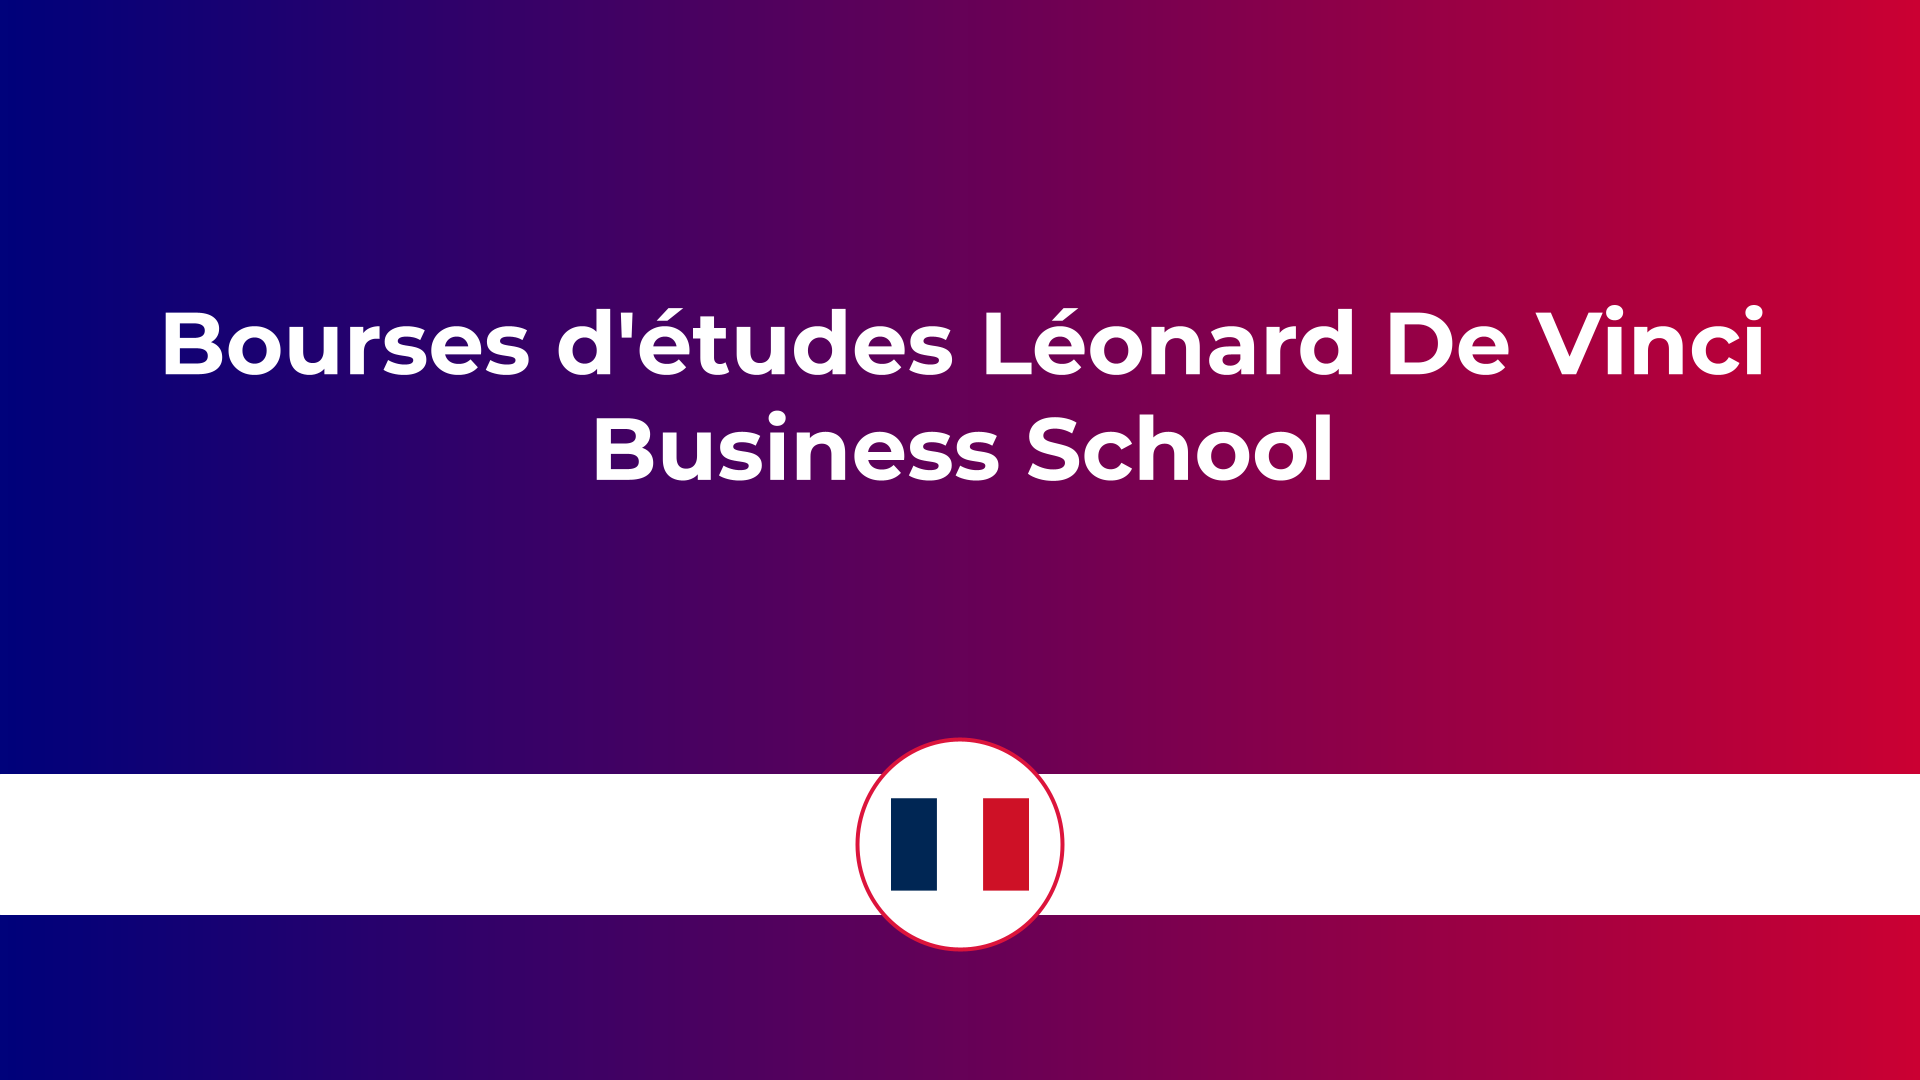 Bourses d'études Léonard De Vinci Business School